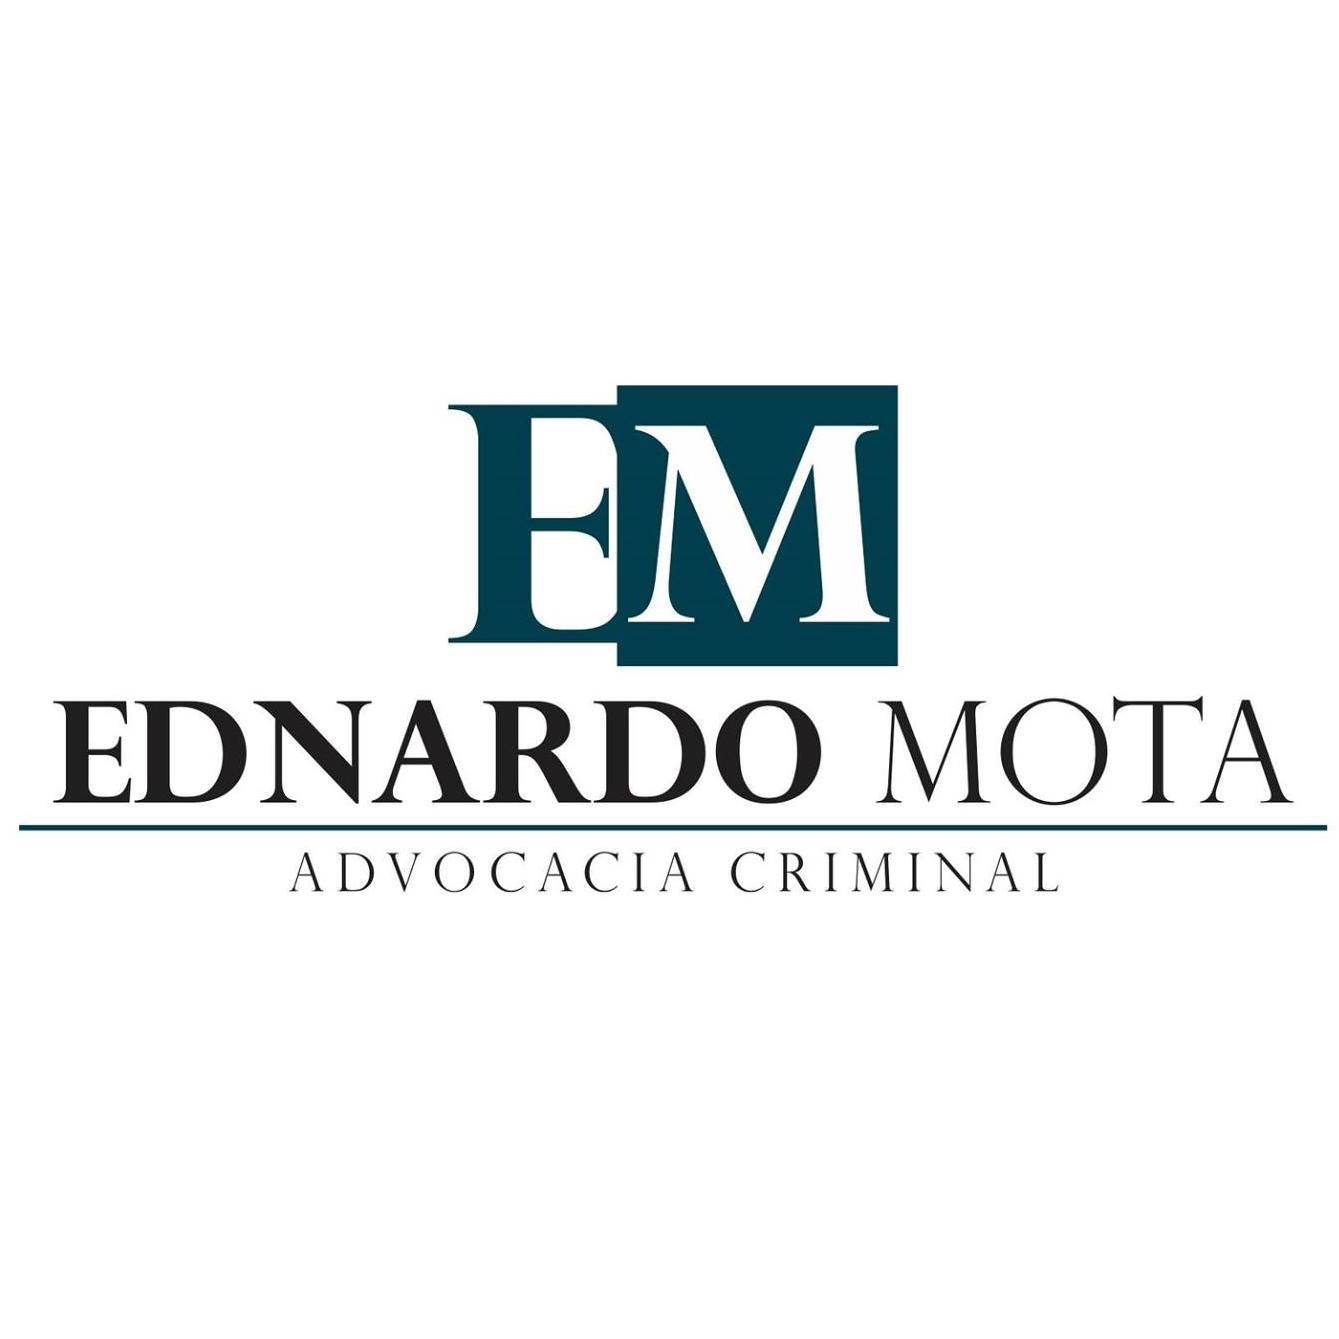 ADVOGADO CRIMINALISTA RJ - EDNARDO MOTA ADVOCACIA CRIMINAL - Advogados - Direitos Humanos - Rio de Janeiro, RJ